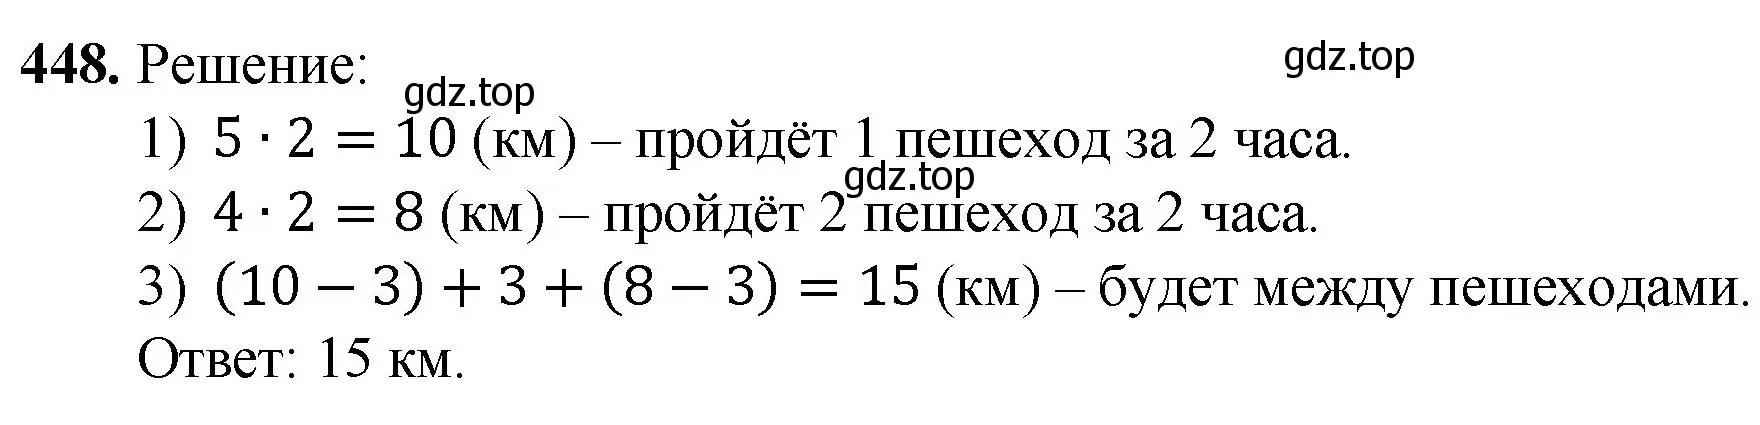 Решение номер 448 (страница 117) гдз по математике 5 класс Мерзляк, Полонский, учебник